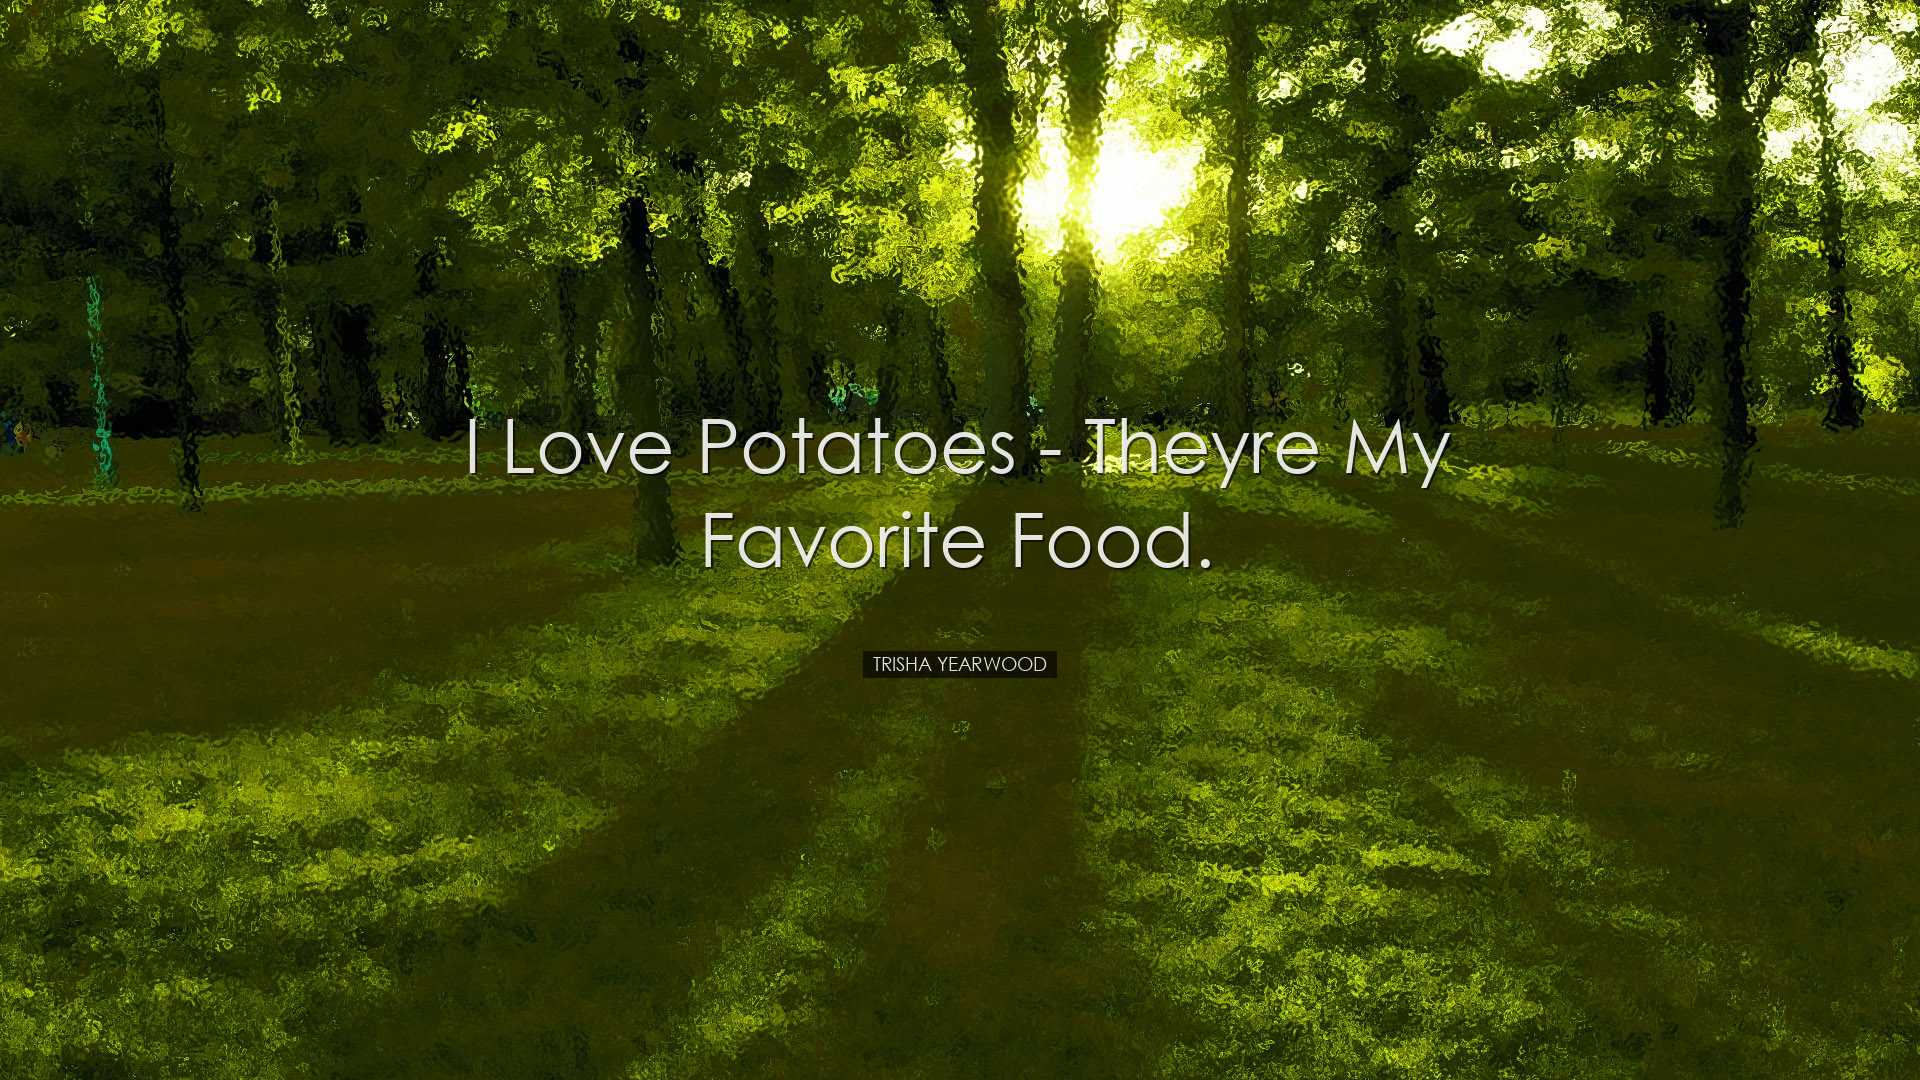 I love potatoes - theyre my favorite food. - Trisha Yearwood